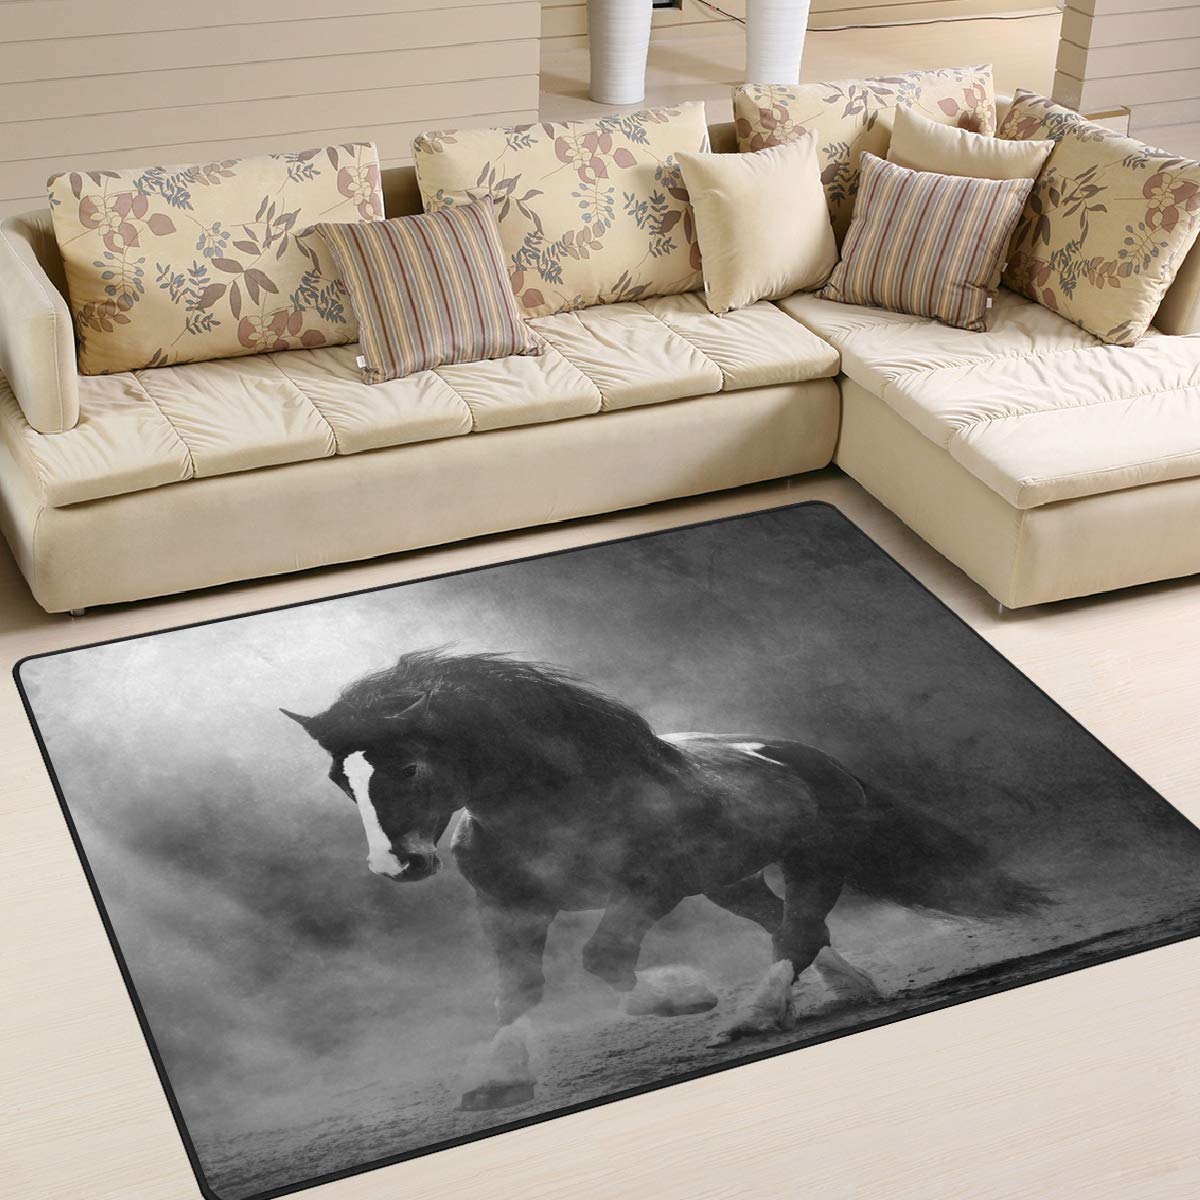 Use7 Teppich für Wohnzimmer und Schlafzimmer, Motiv Pferd im Staub, 203 cm x 147,3 cm